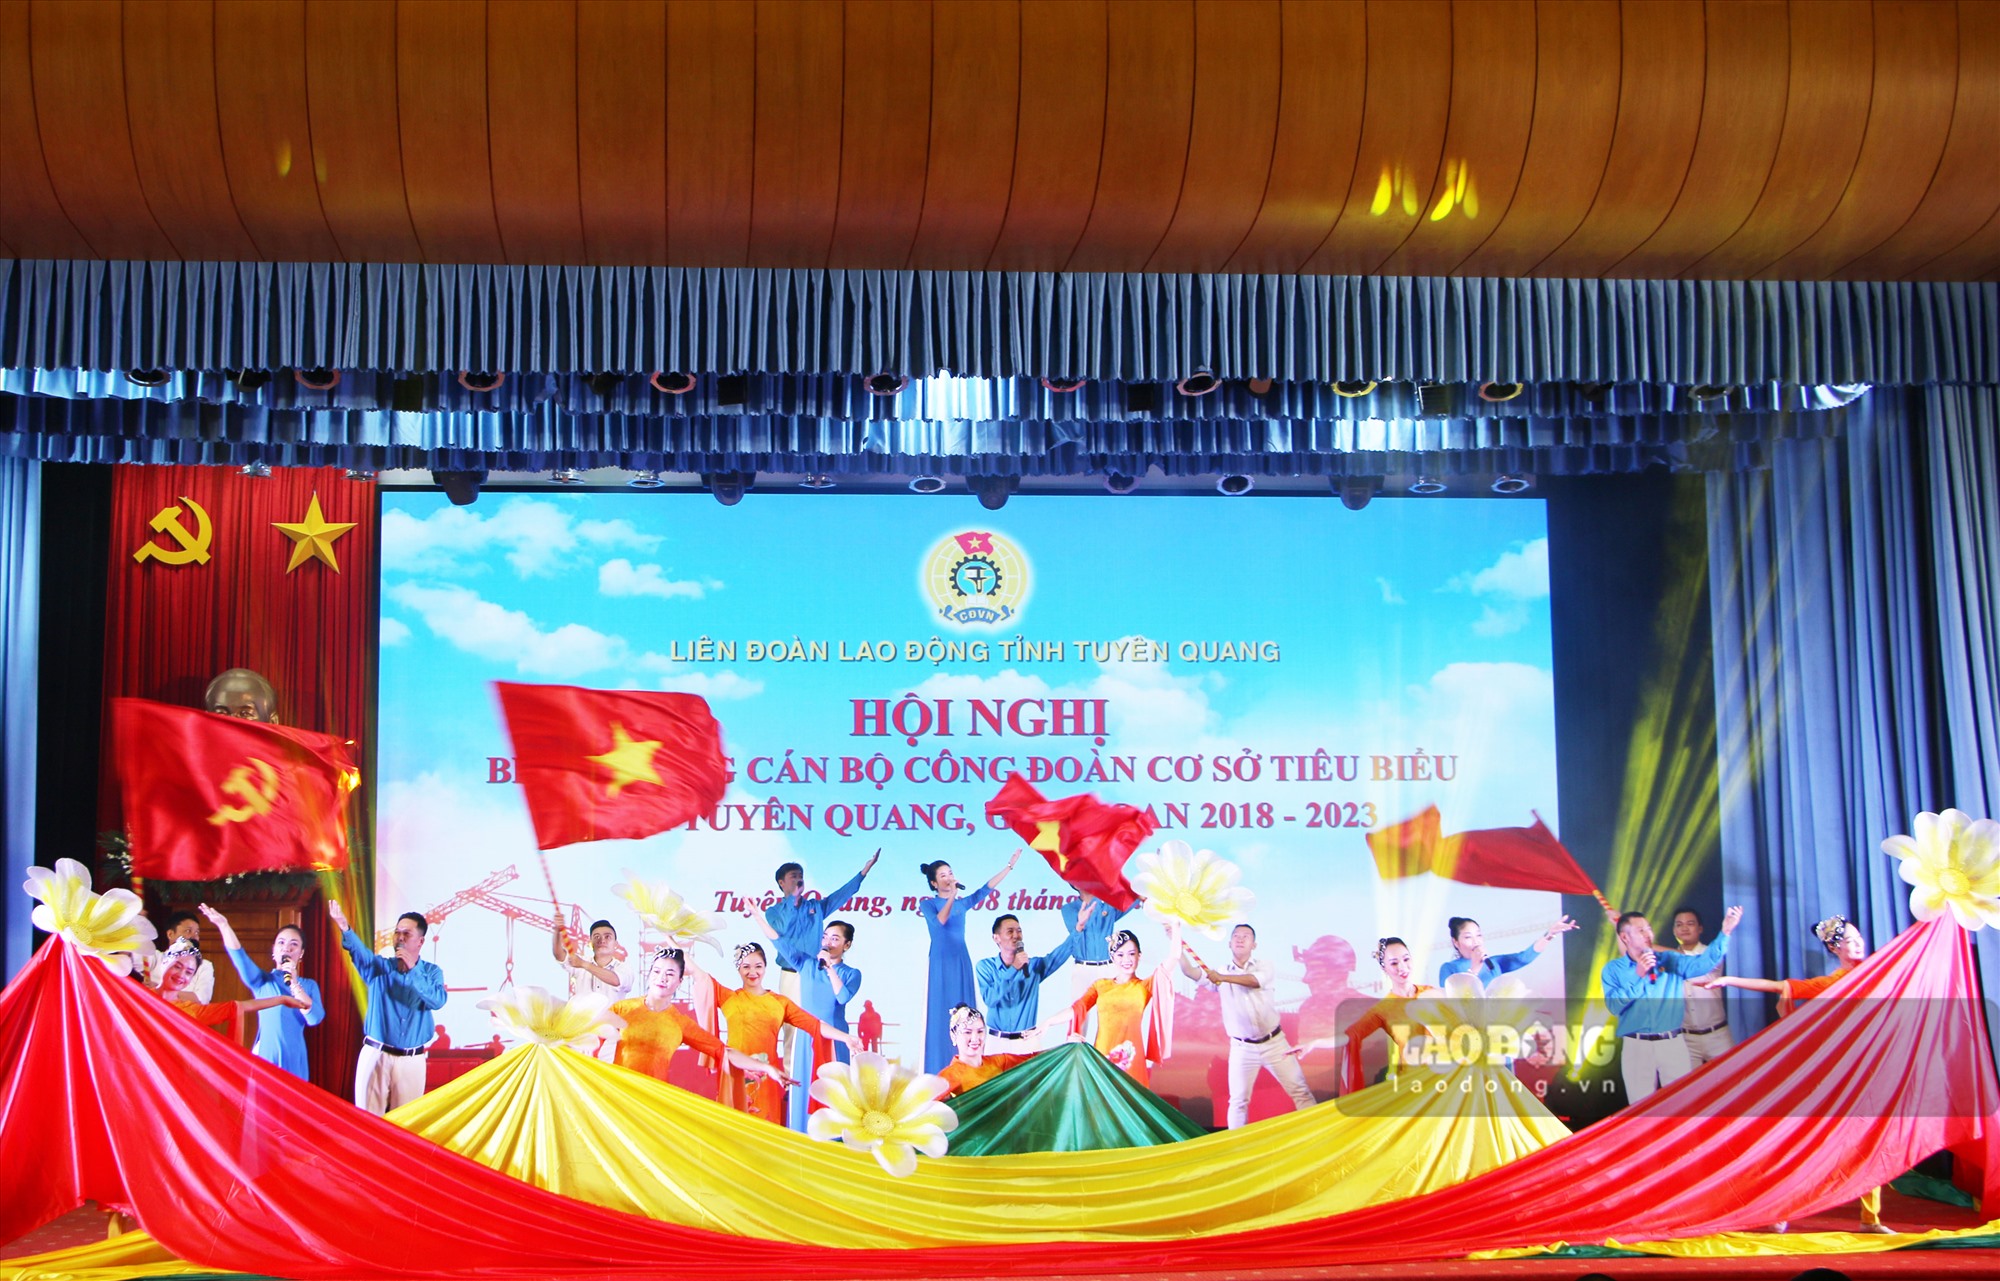 Ngày 8.9, Liên đoàn Lao động tỉnh Tuyên Quang tổ chức hội nghị biểu dương các cán bộ công đoàn cơ sở (CĐCS) tiêu biểu nhằm cổ vũ, khích lệ đội ngũ cán bộ CĐCS phát huy vai trò, trách nhiệm trong các hoạt động công đoàn tại cơ sở.